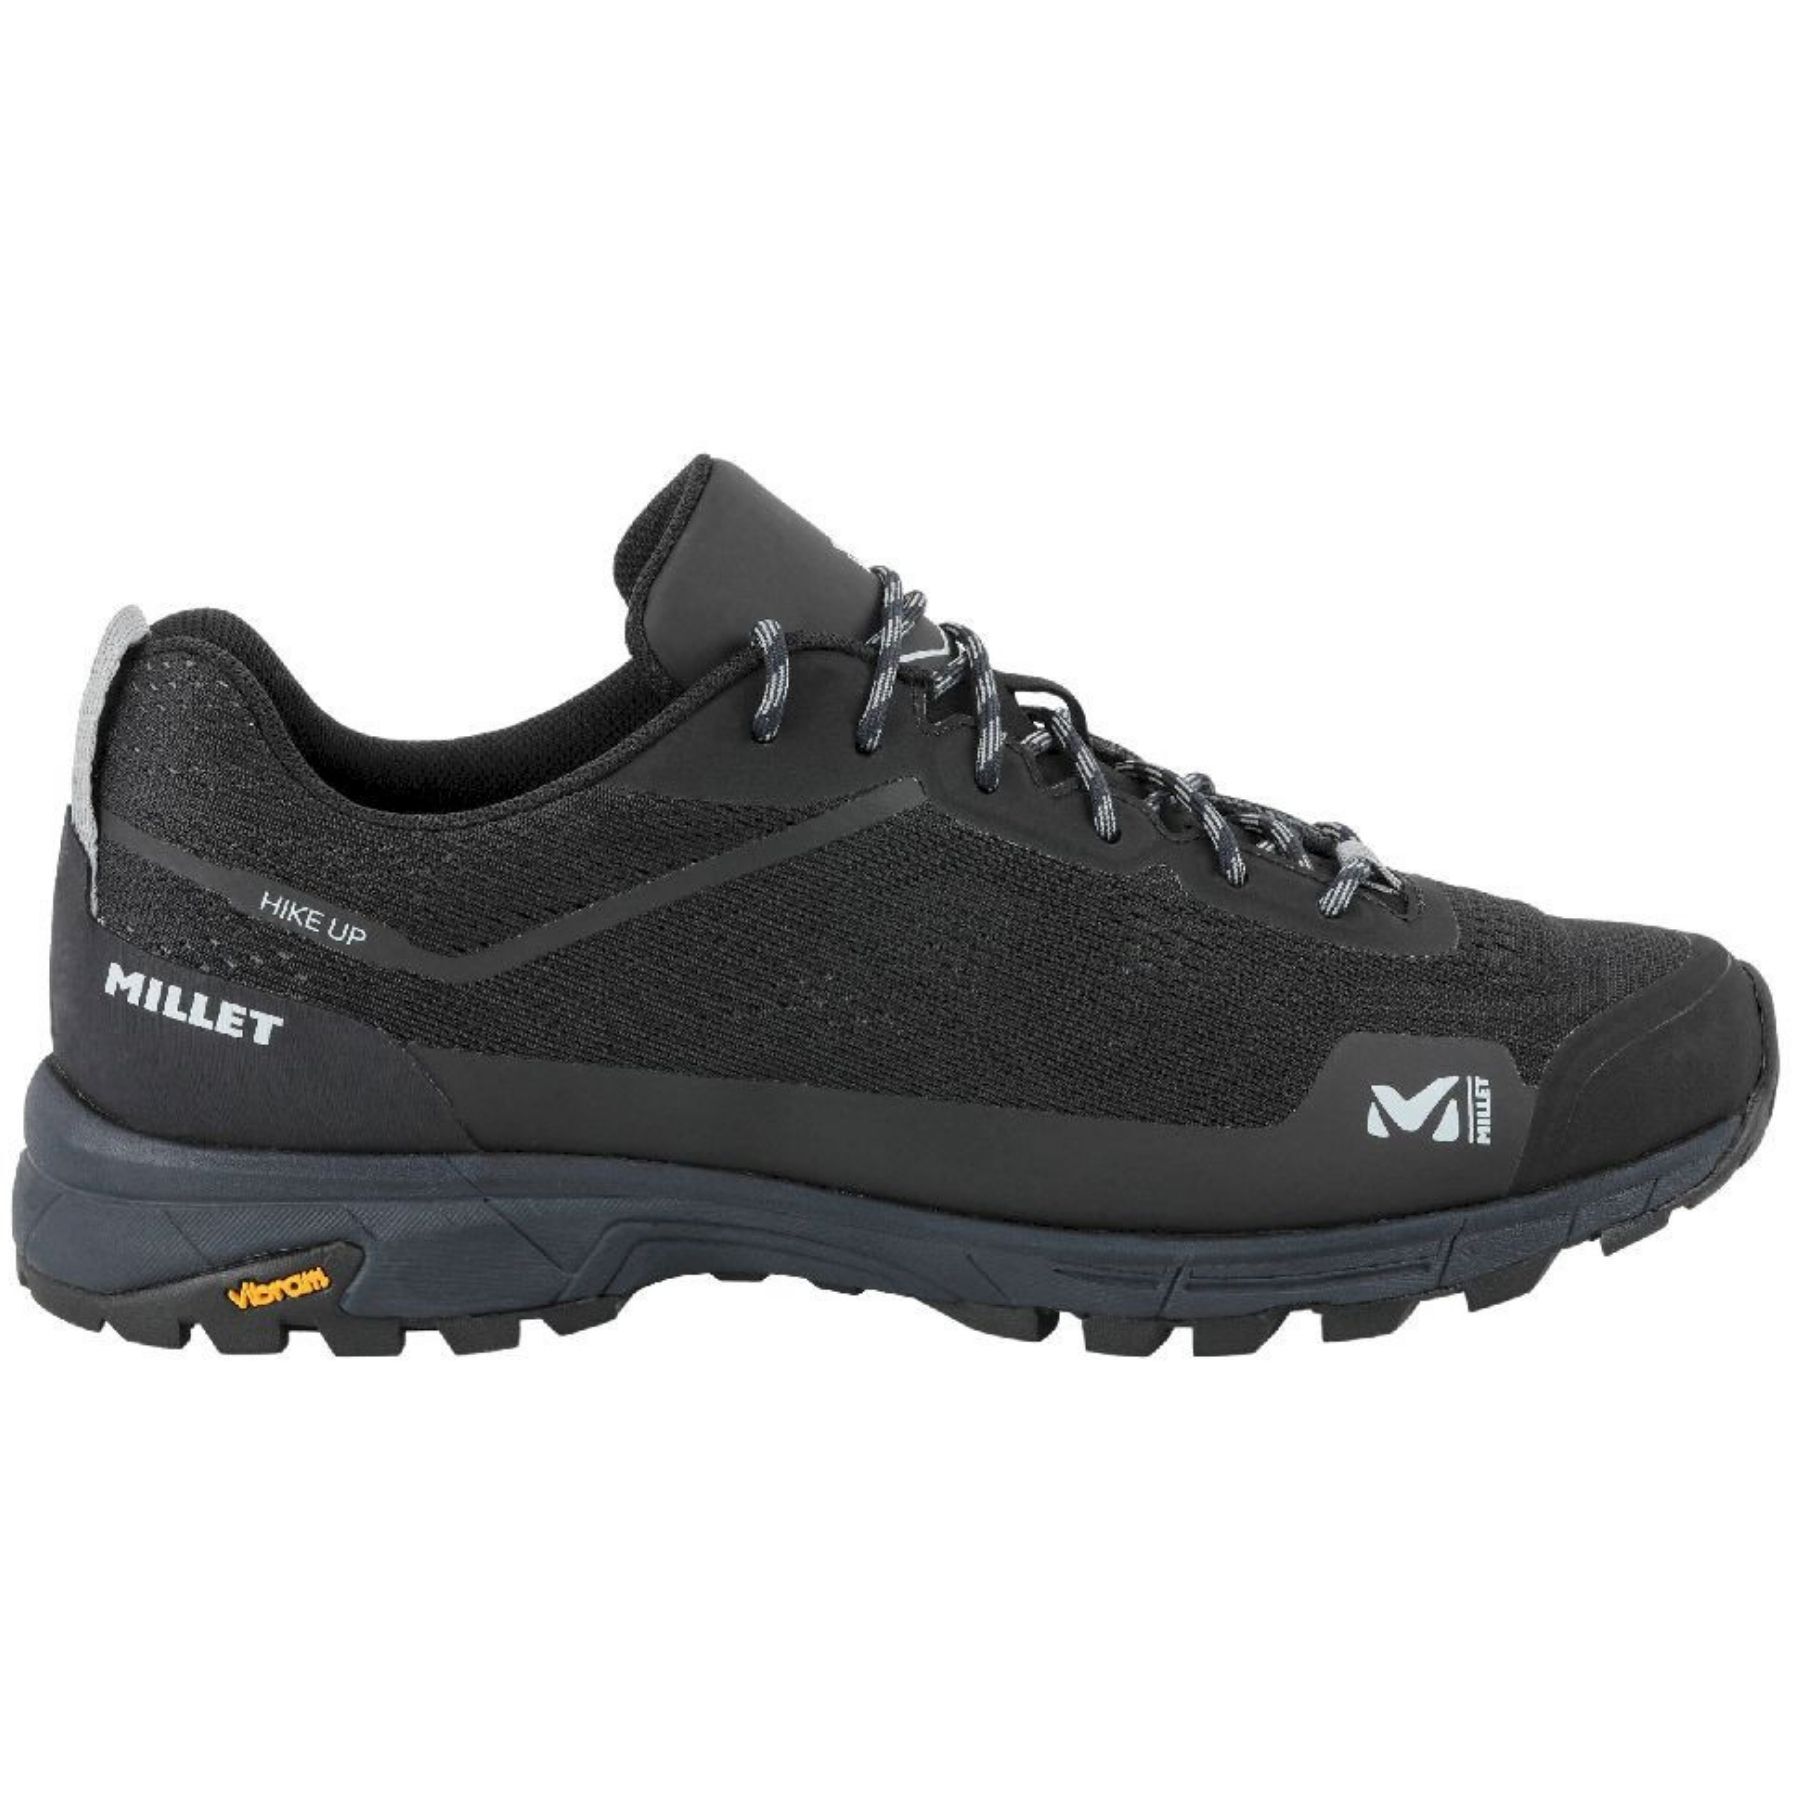 Millet Hike Up - Walking Boots - Men's